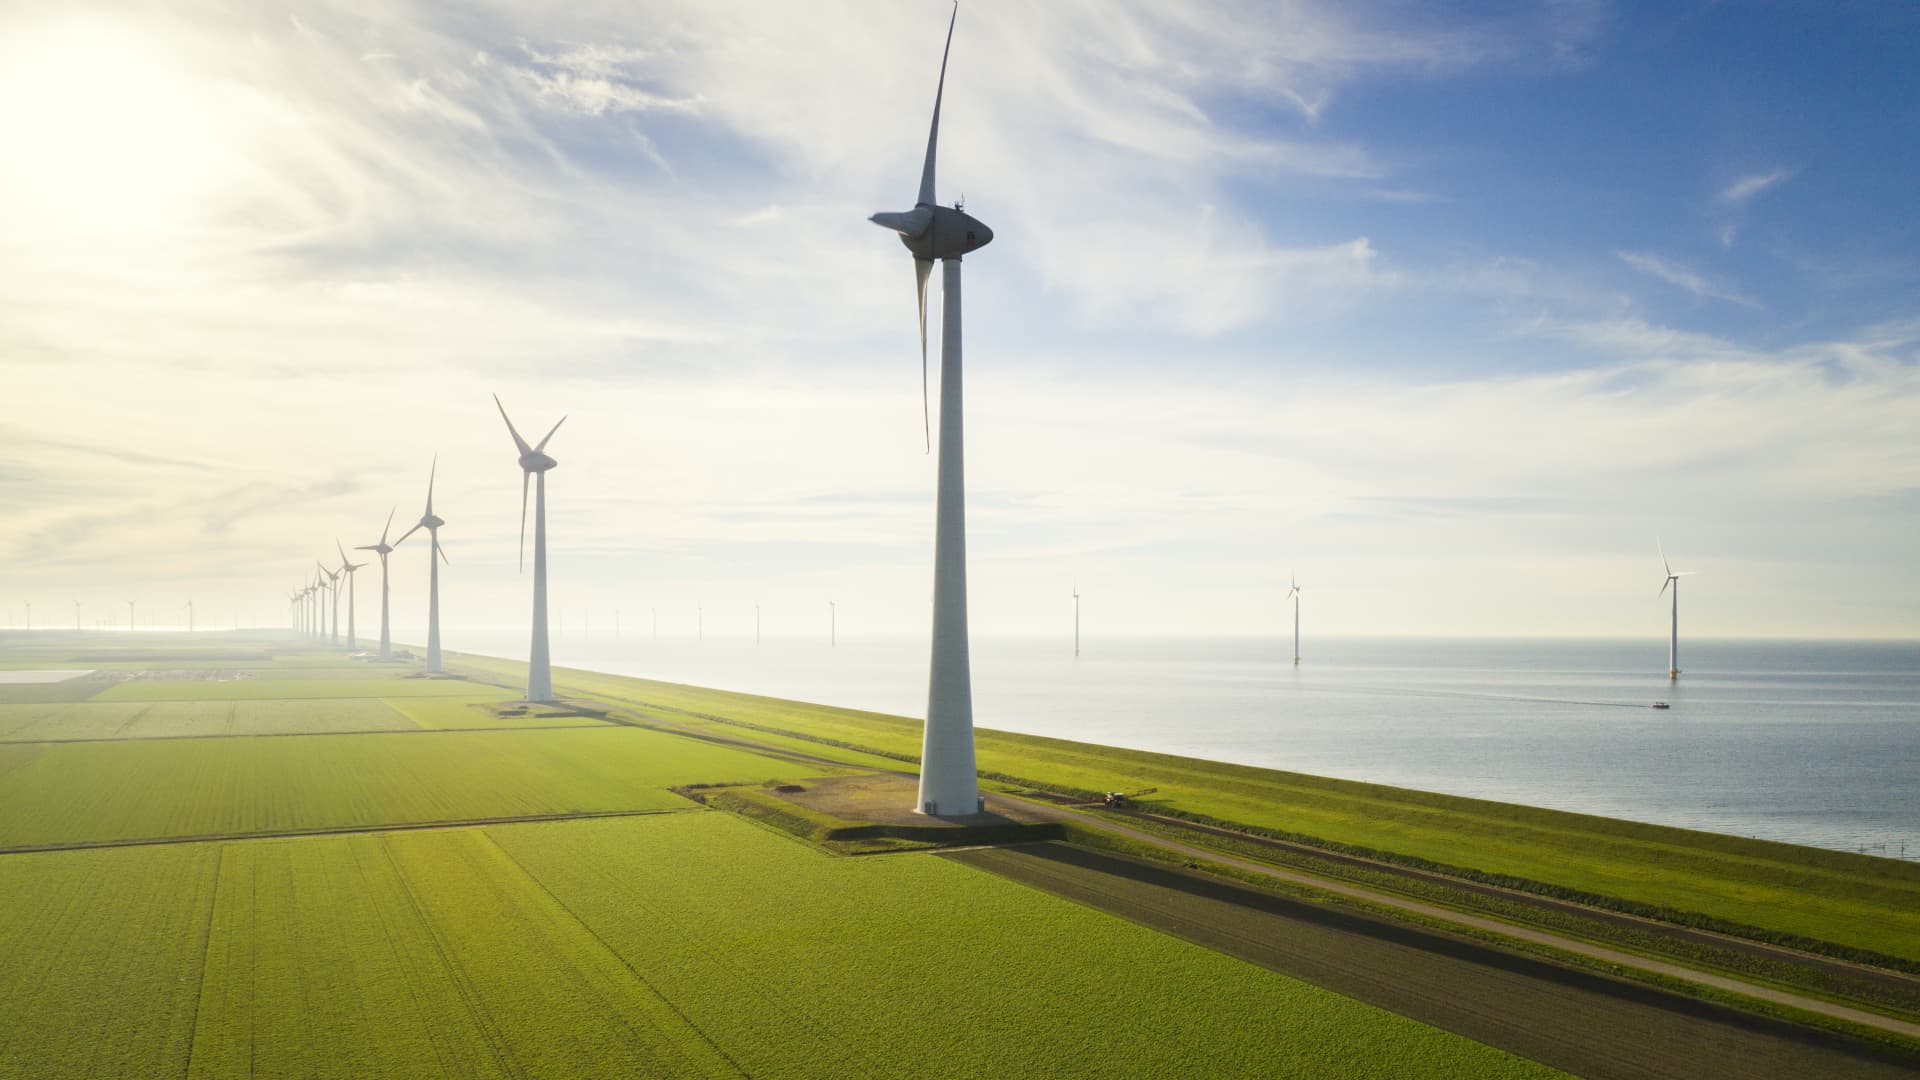 Wind energy installations must quadruple to hit net-zero goals: GWEC